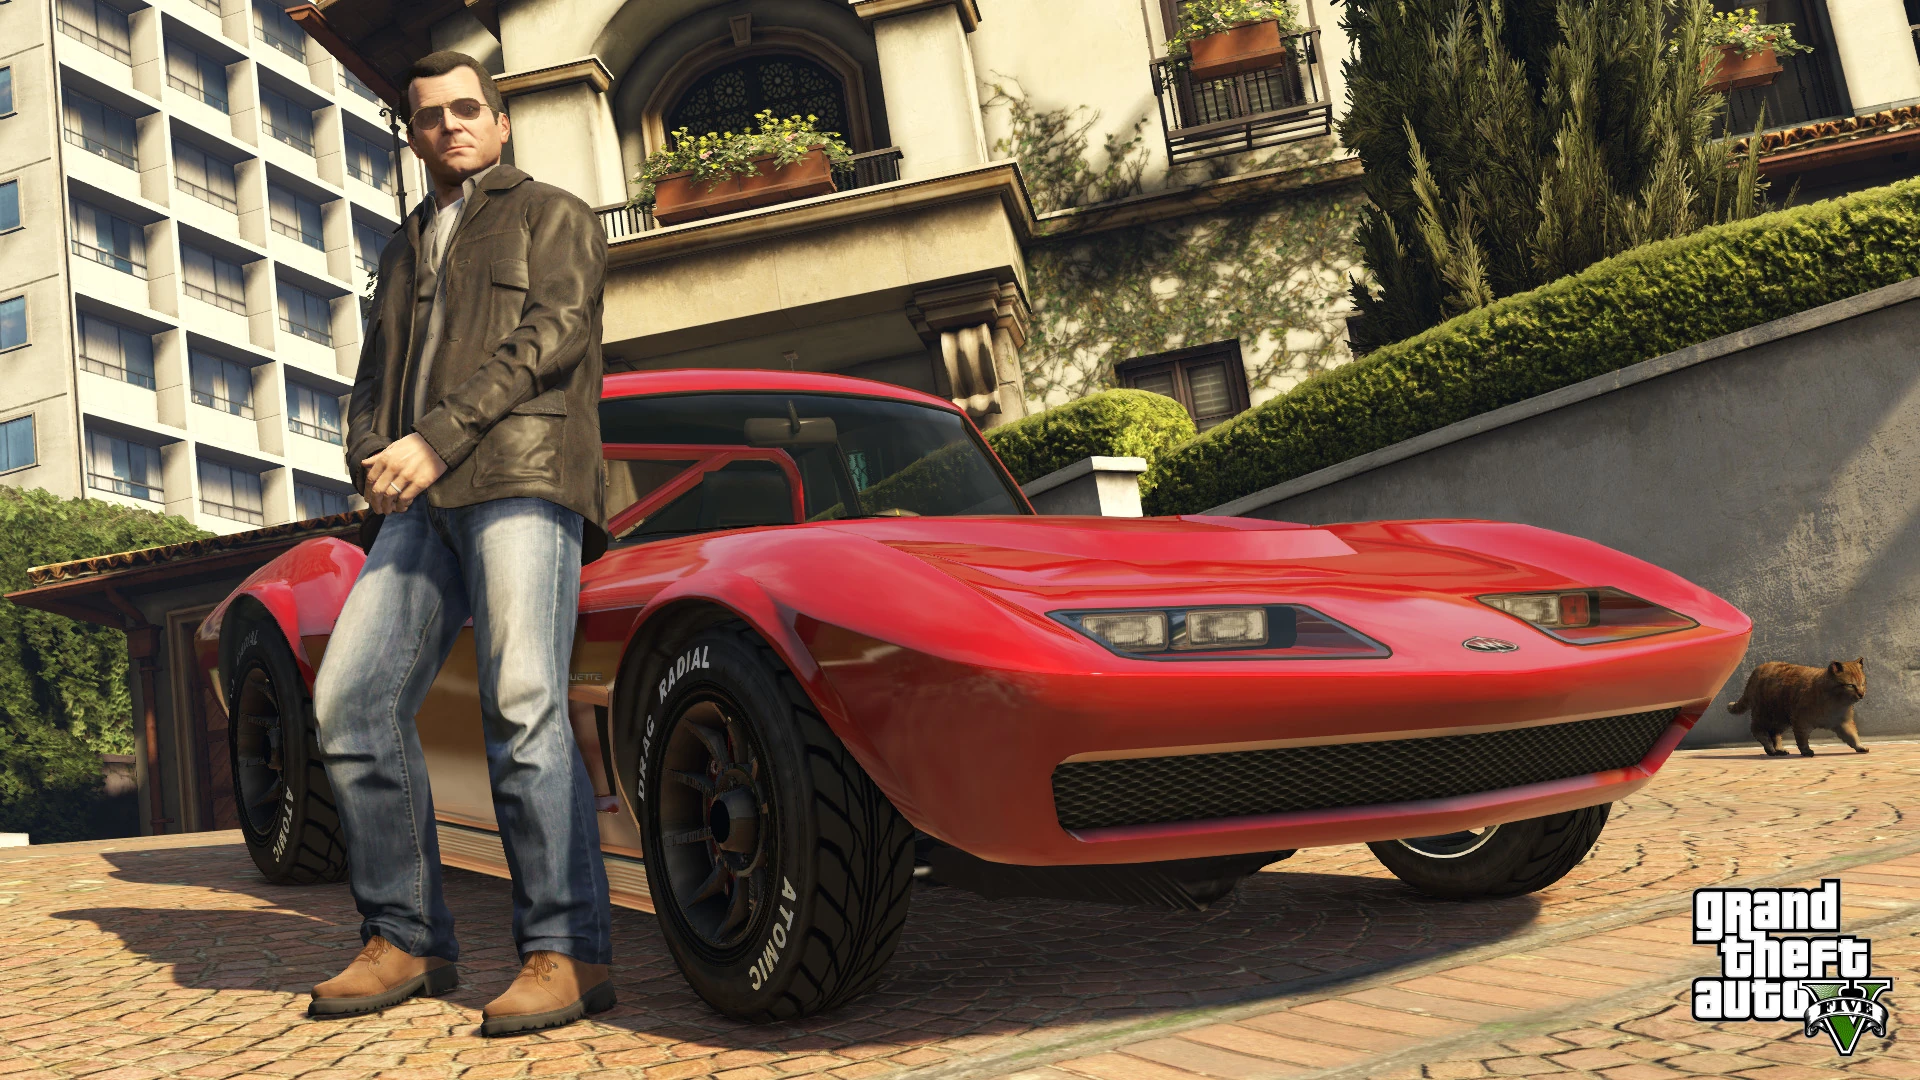 Grand Theft Auto V - PS4 Screenshot 15 - Possante